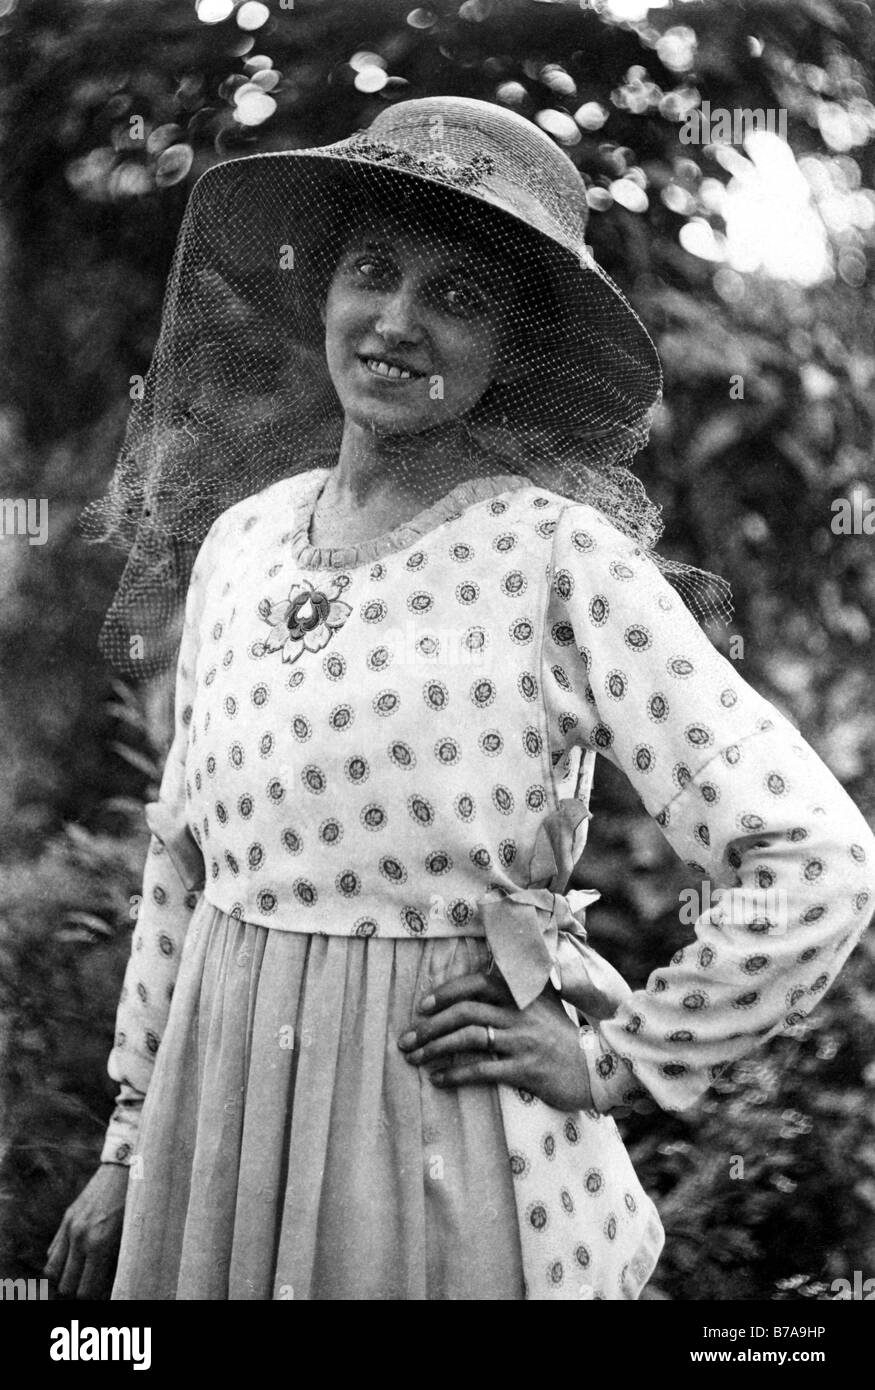 Photo historique, la femme à la protection contre les insectes, ca. 1940 Banque D'Images